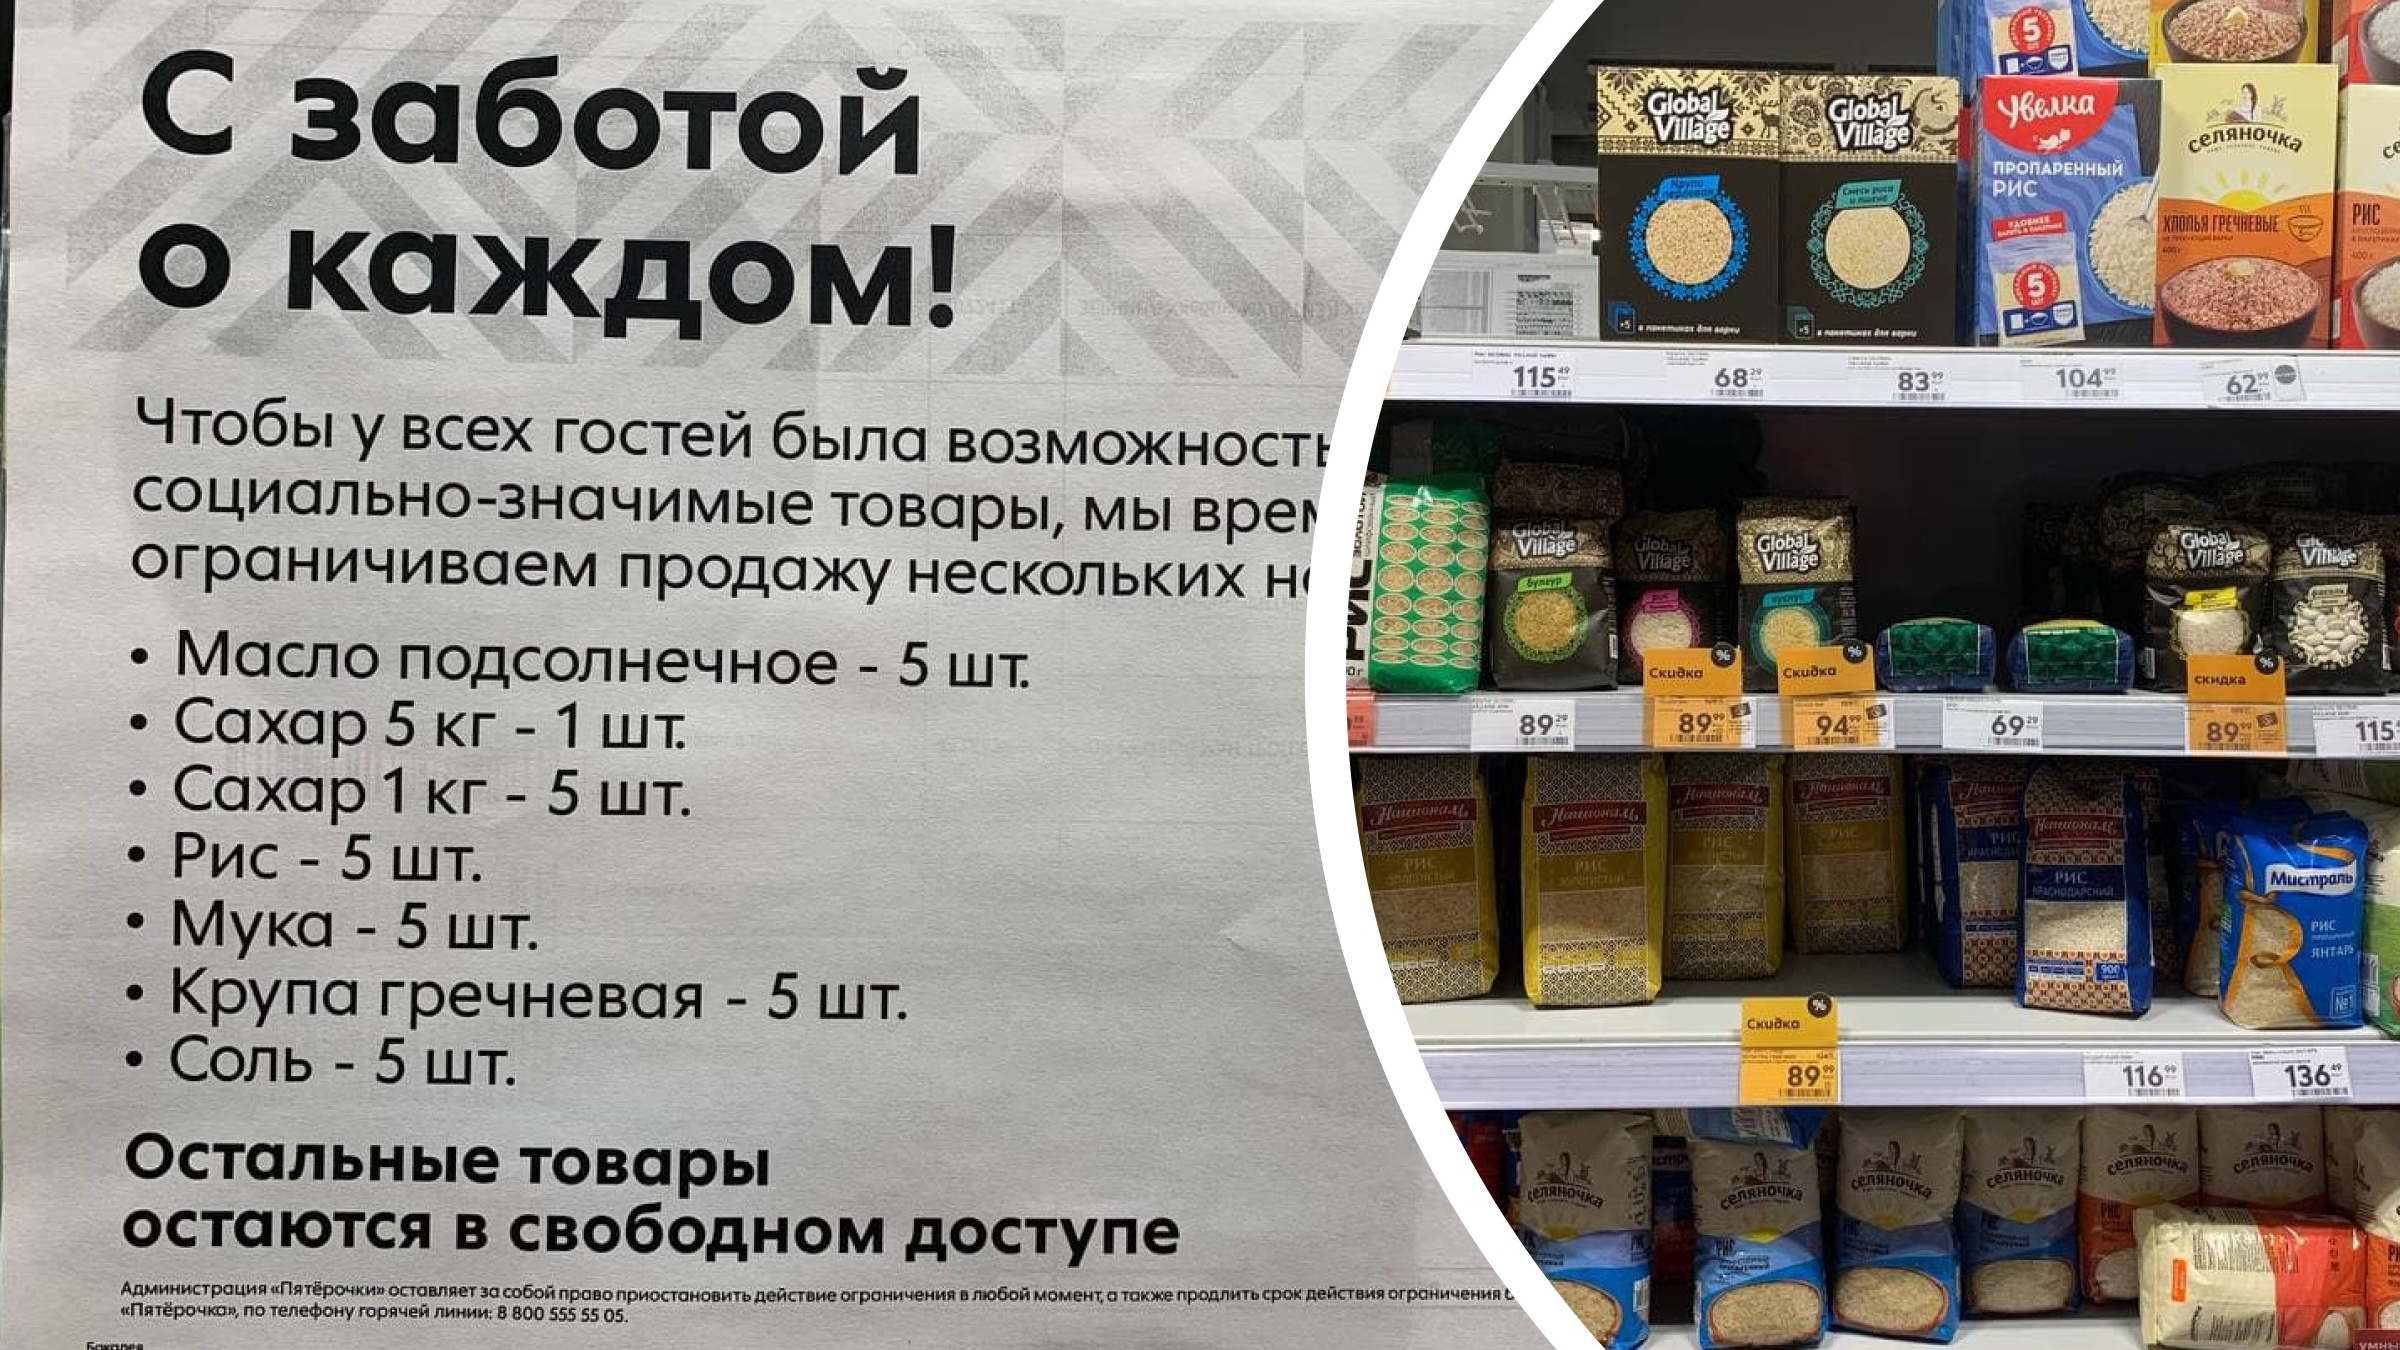 Европейские товары в россии. Поставщики продуктов питания. Ограничения продажи продуктов. Европейские товары. Российские продукты.